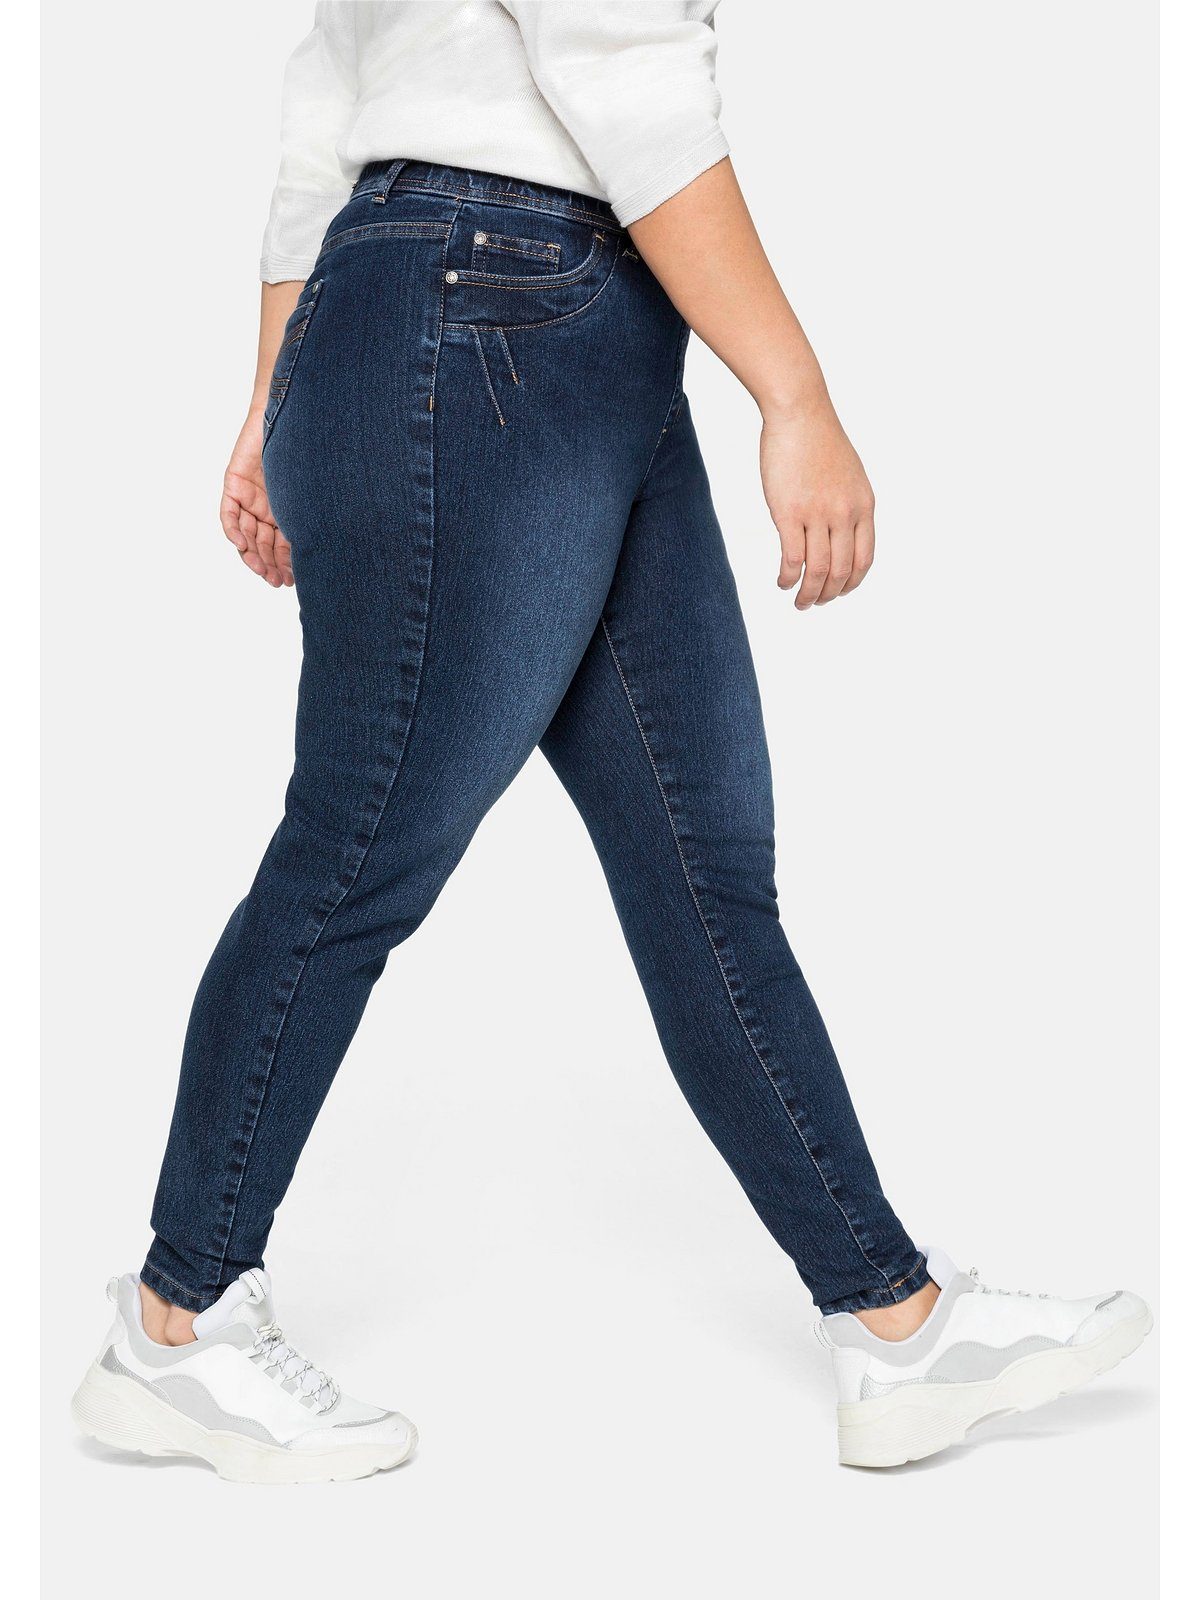 Stretch-Jeans Denim Größen Gummibund dark Gürtelschlaufen Große und blue Sheego mit